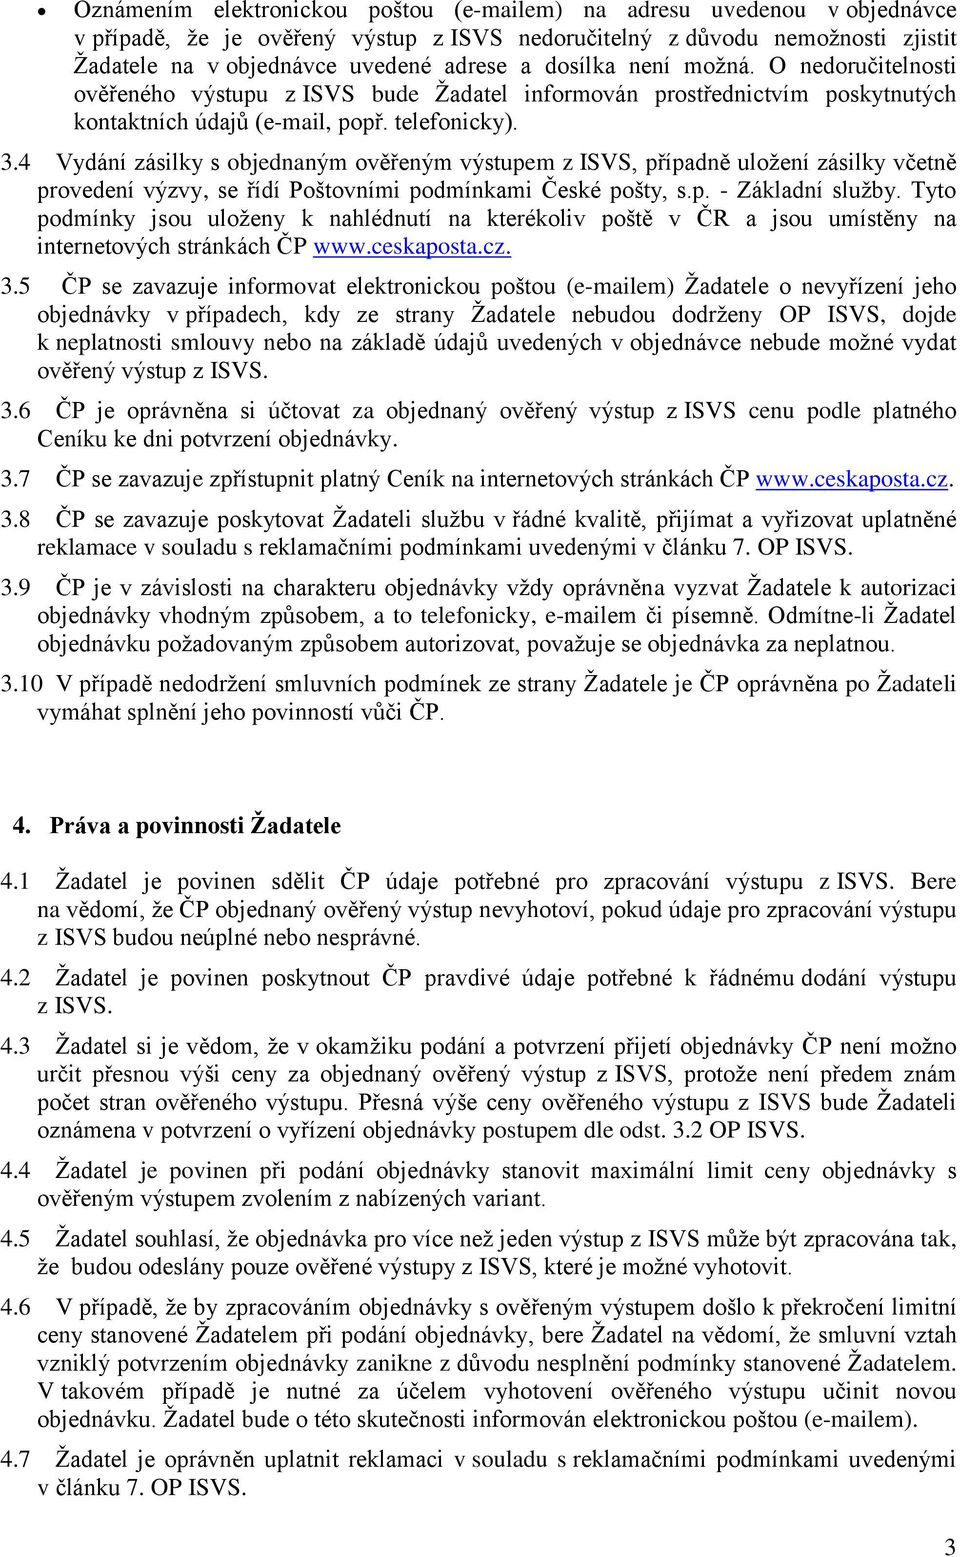 4 Vydání zásilky s bjednaným věřeným výstupem z ISVS, případně ulžení zásilky včetně prvedení výzvy, se řídí Pštvními pdmínkami České pšty, s.p. - Základní služby.